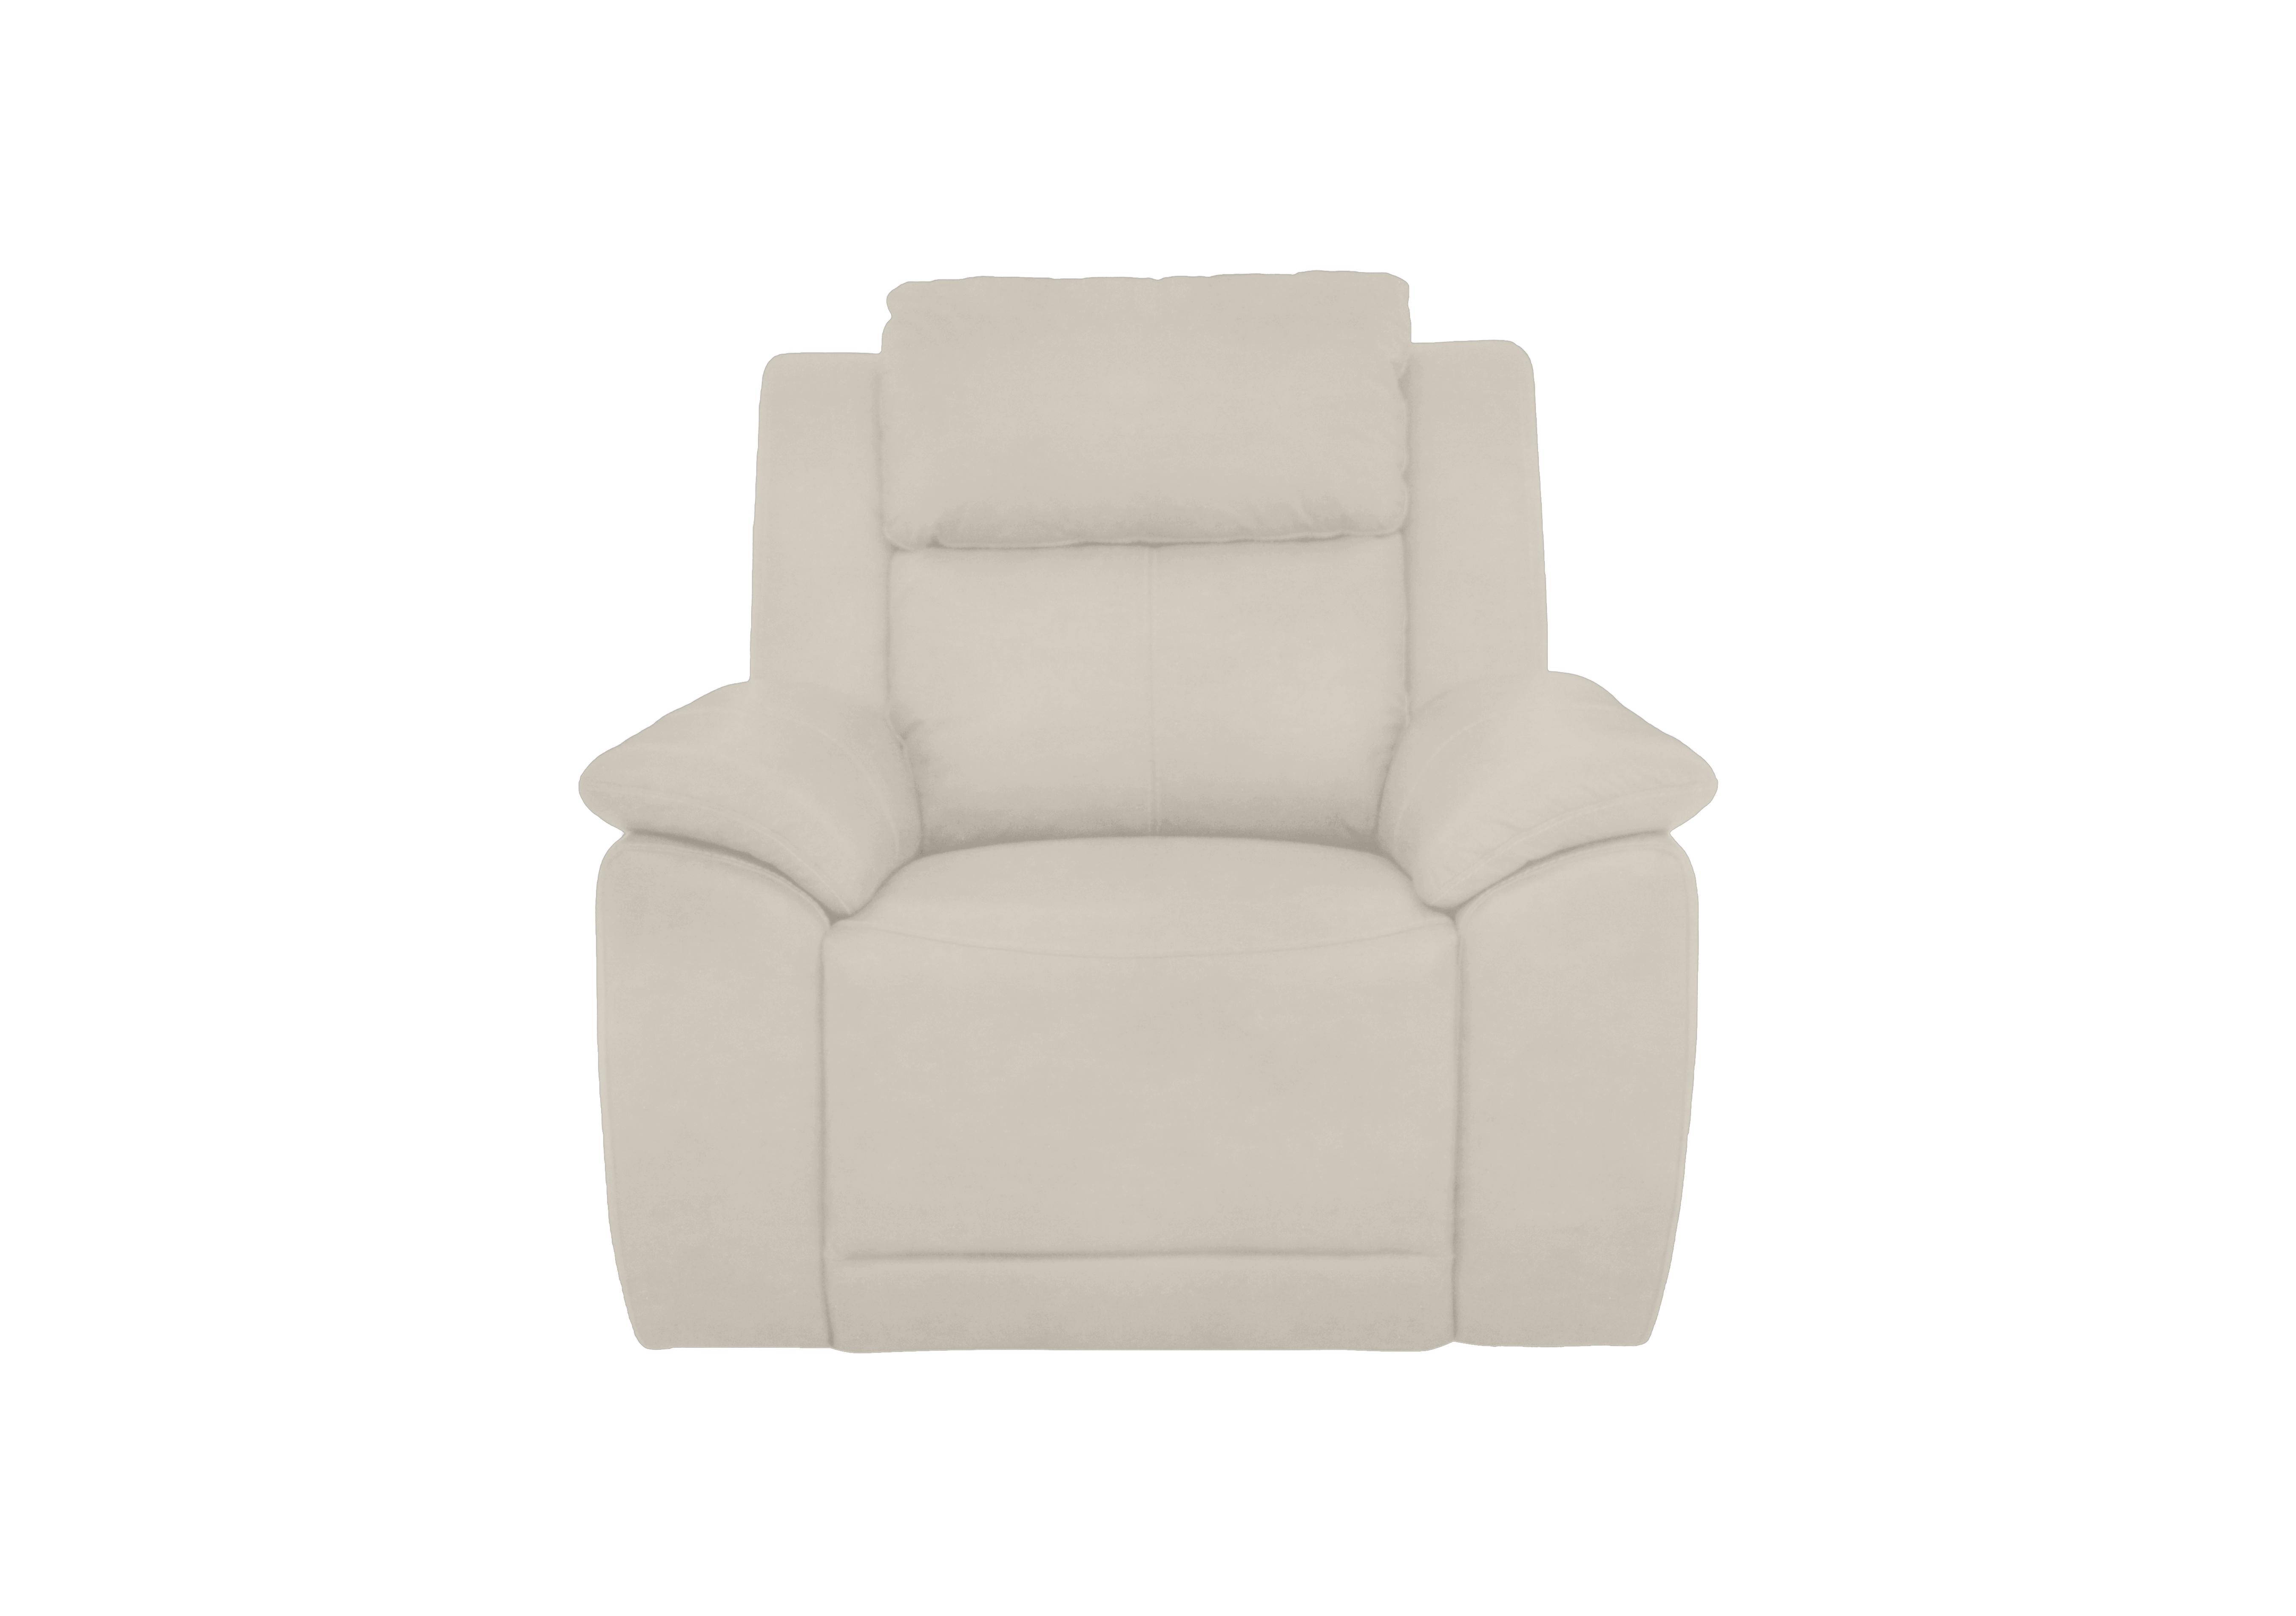 Utah Fabric Chair in Velvet White Vv-0307 on Furniture Village